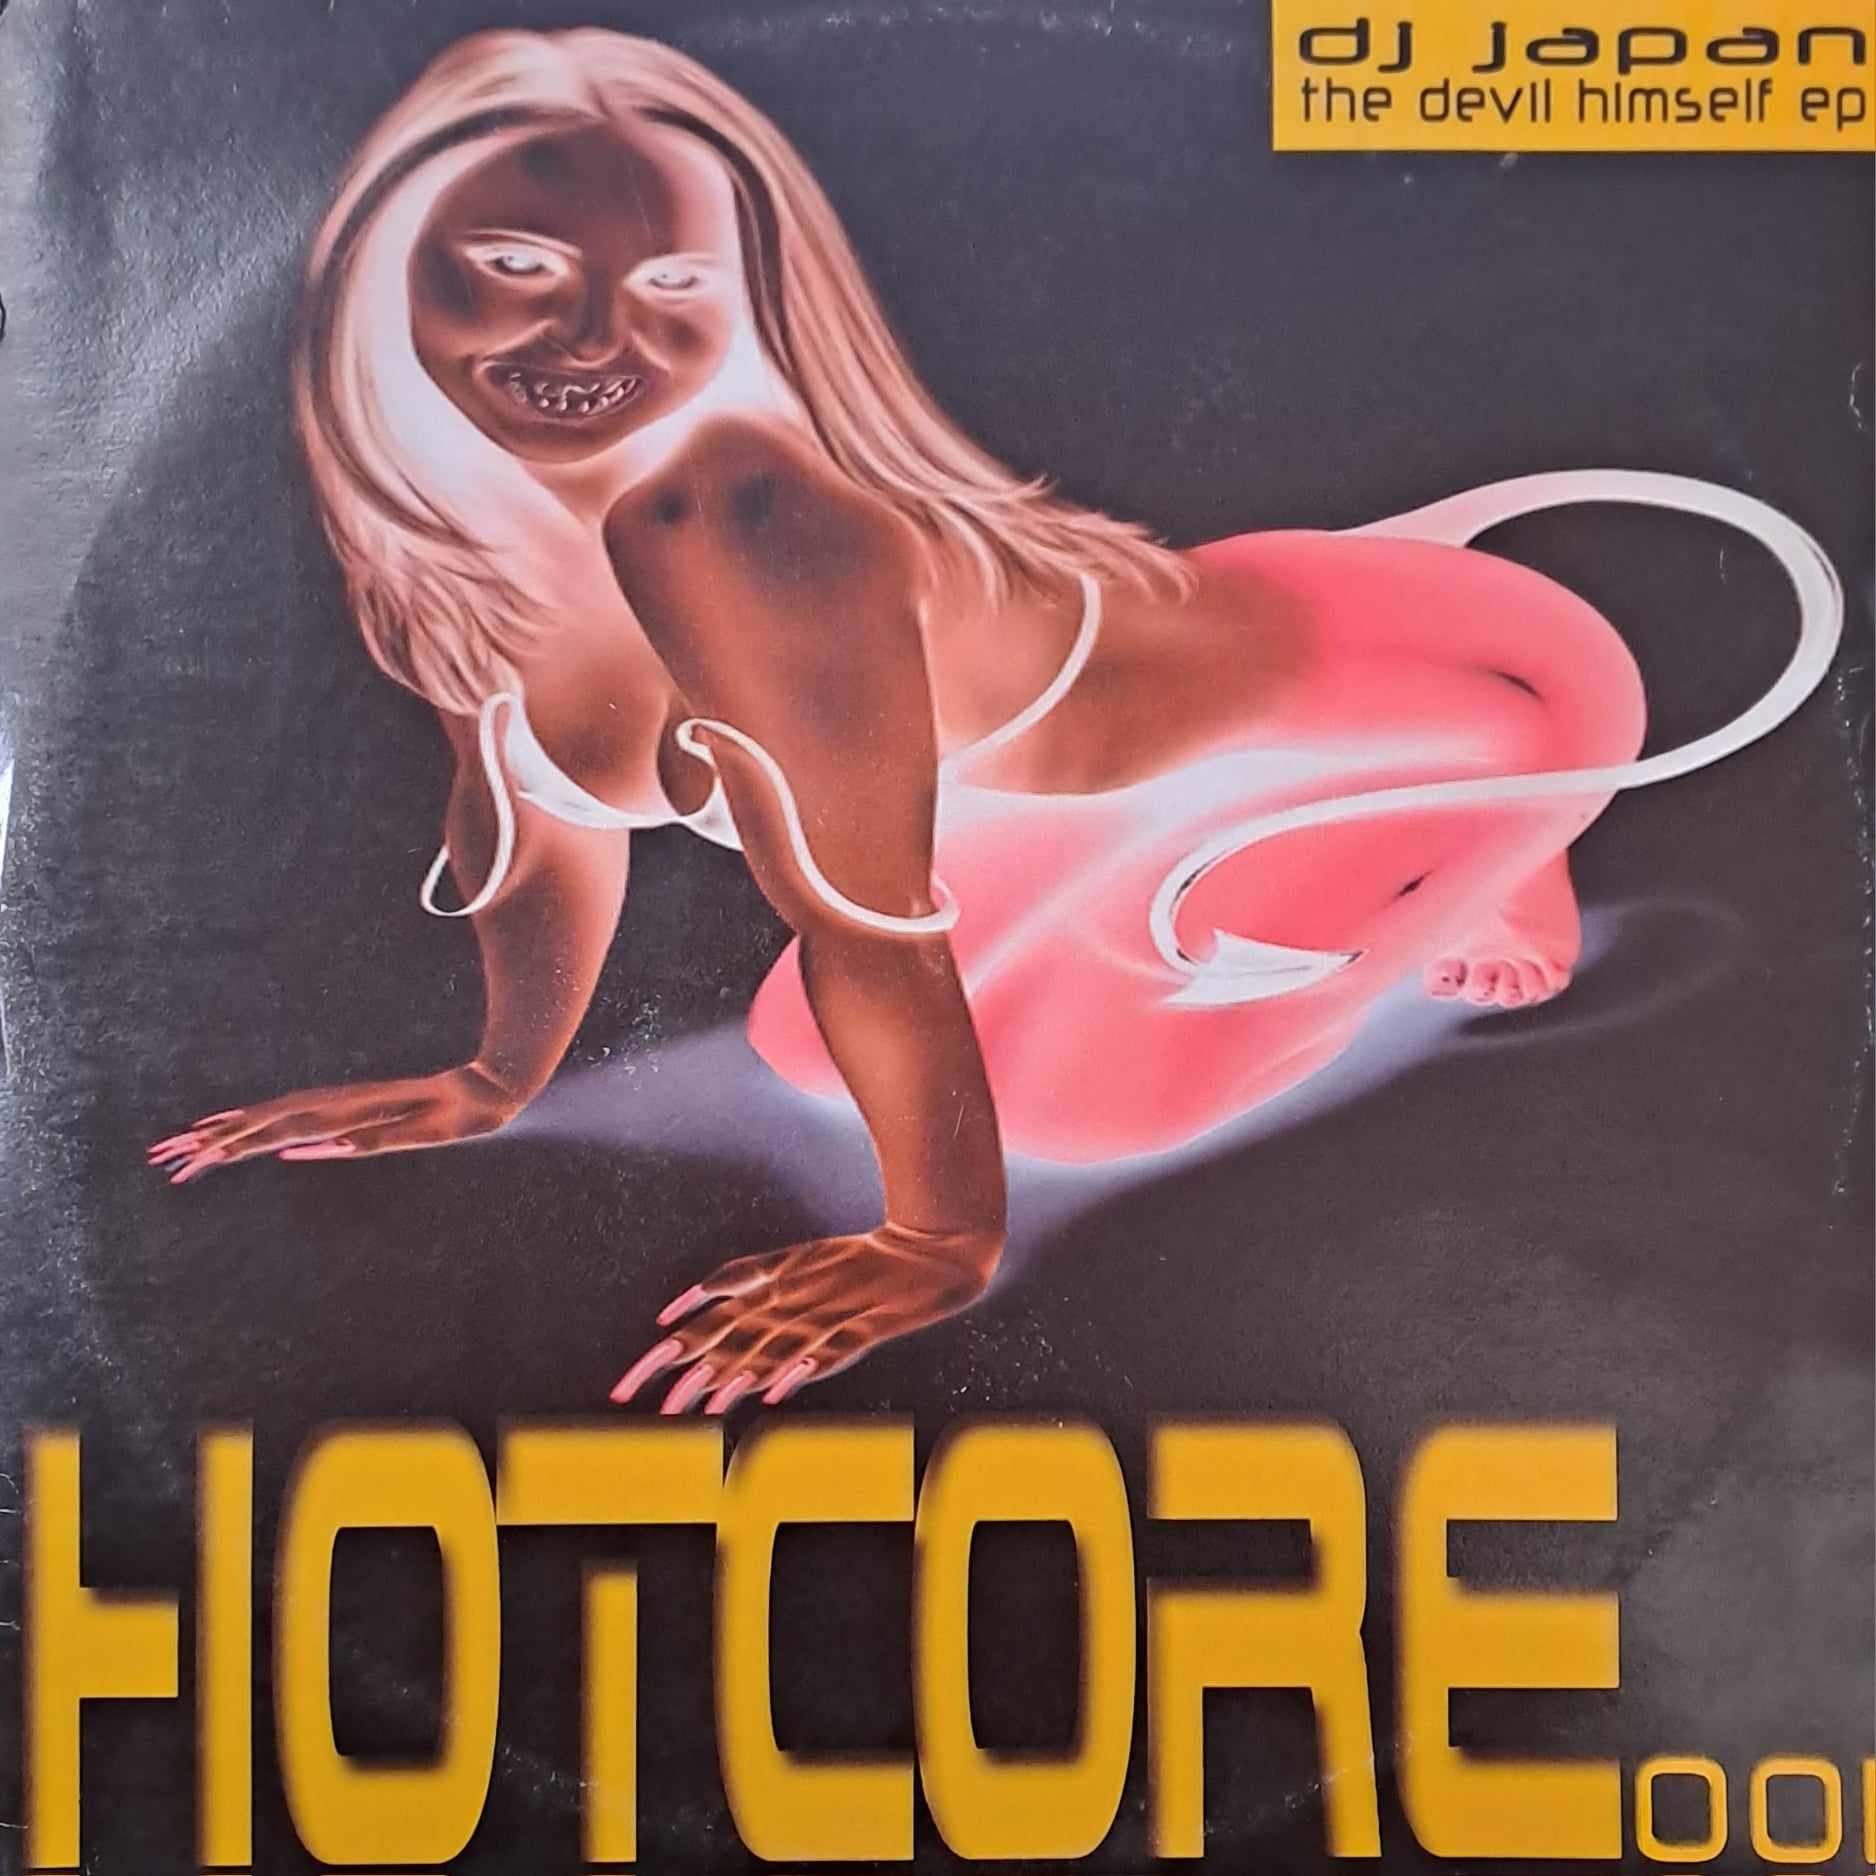 Hotcore Records 001 - vinyle hardcore